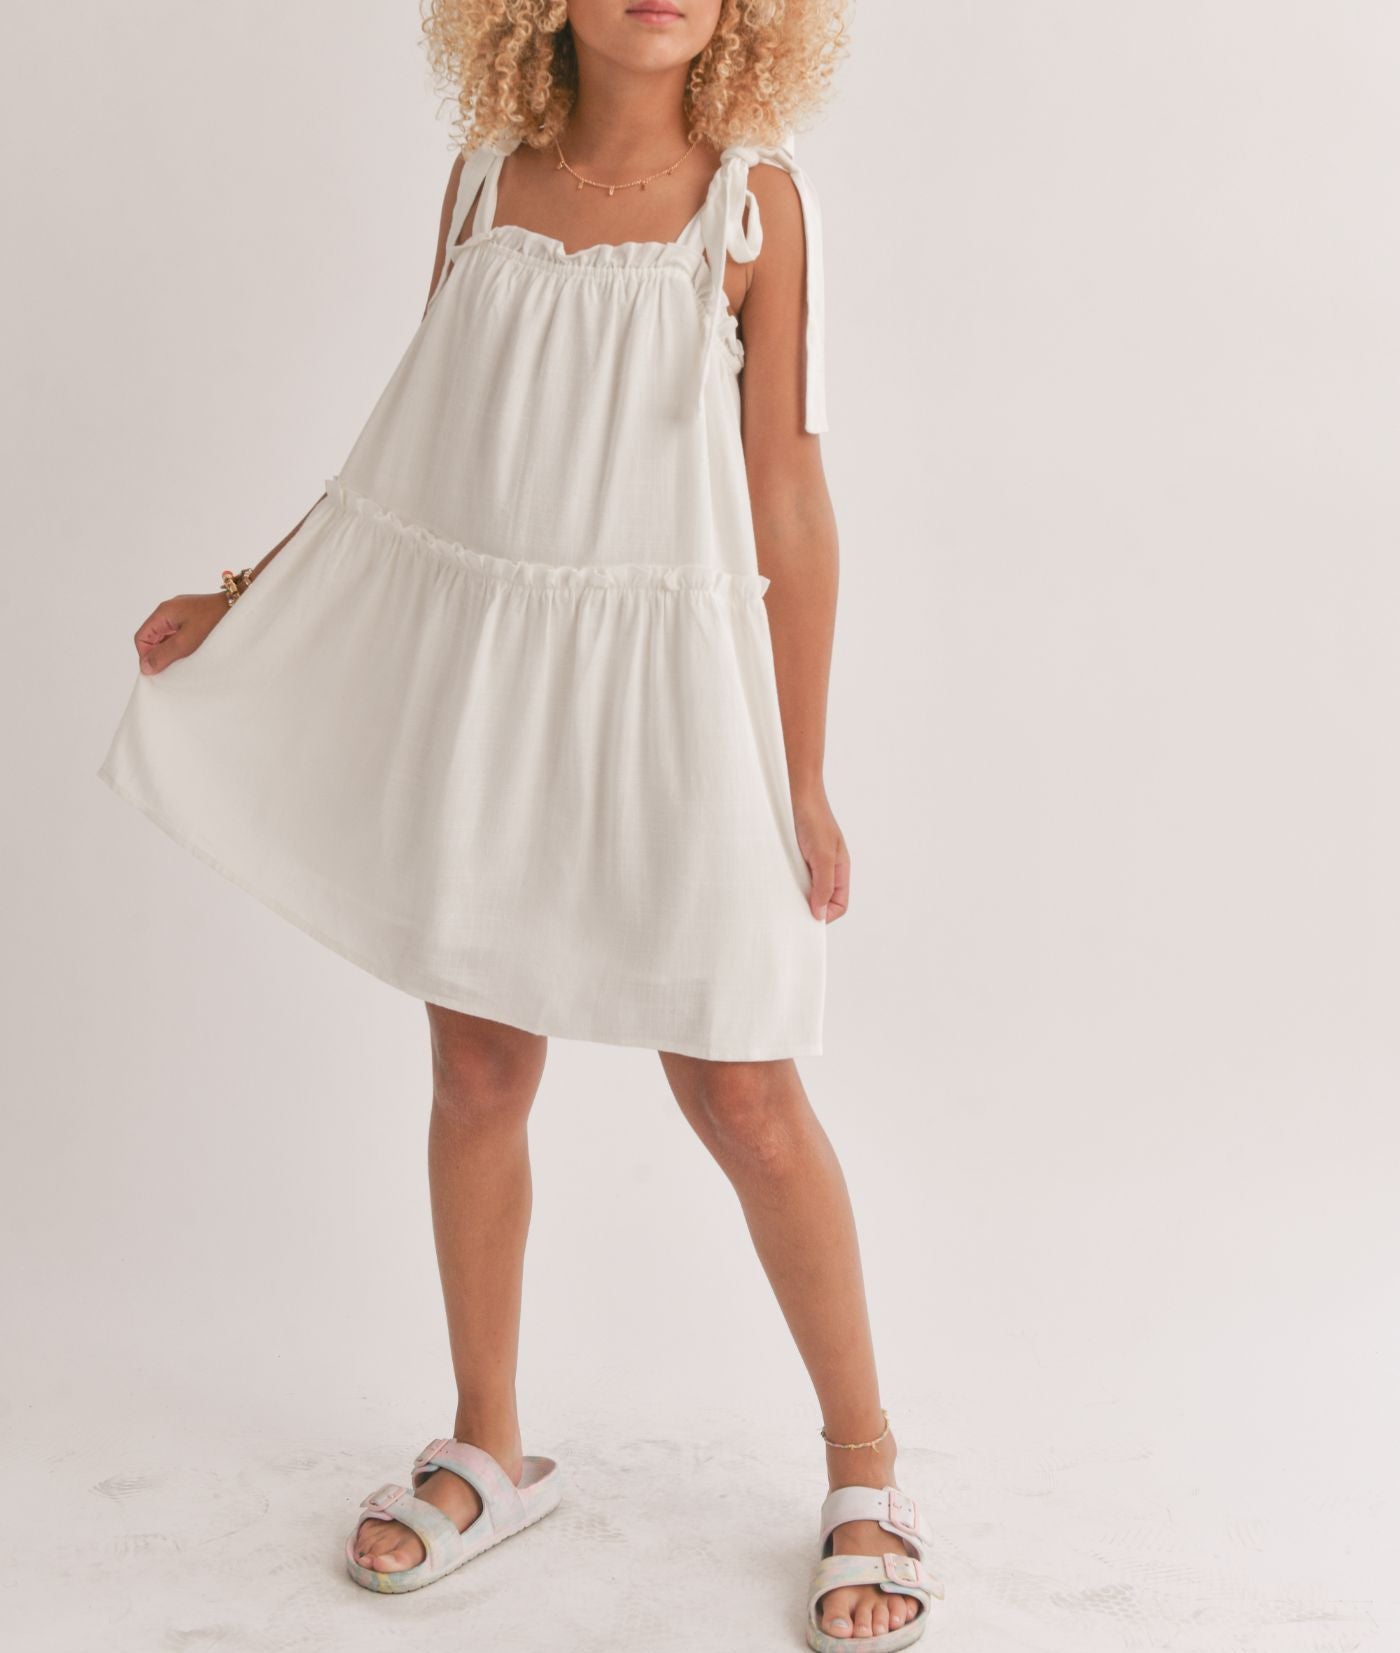 Tween Sugarloaf Tiered Dress w/Tie Straps, White